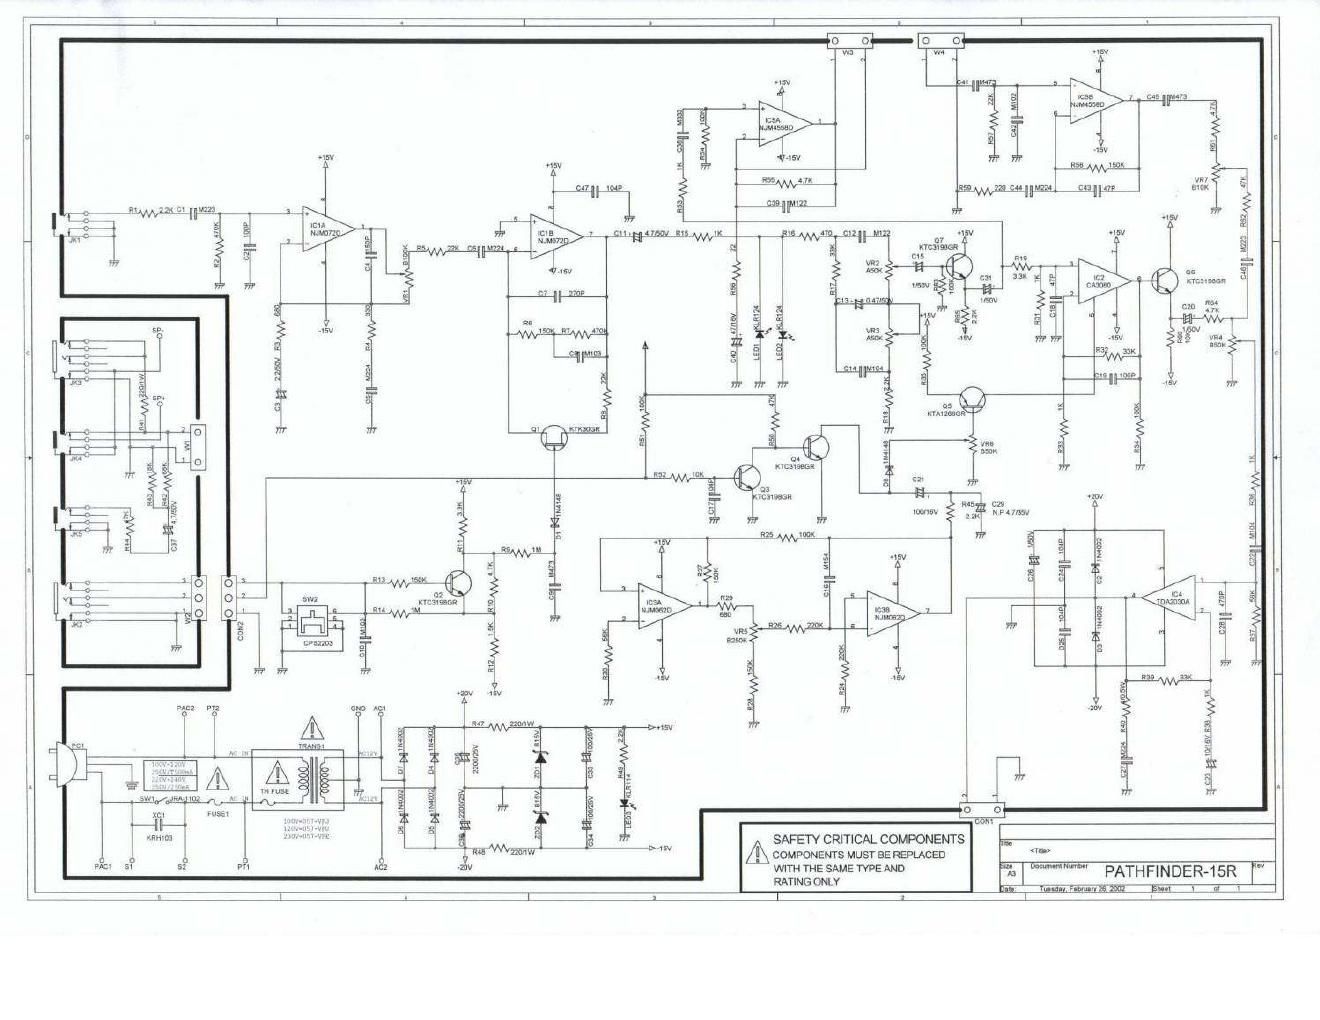 epiphone pathfinder 15r schematic